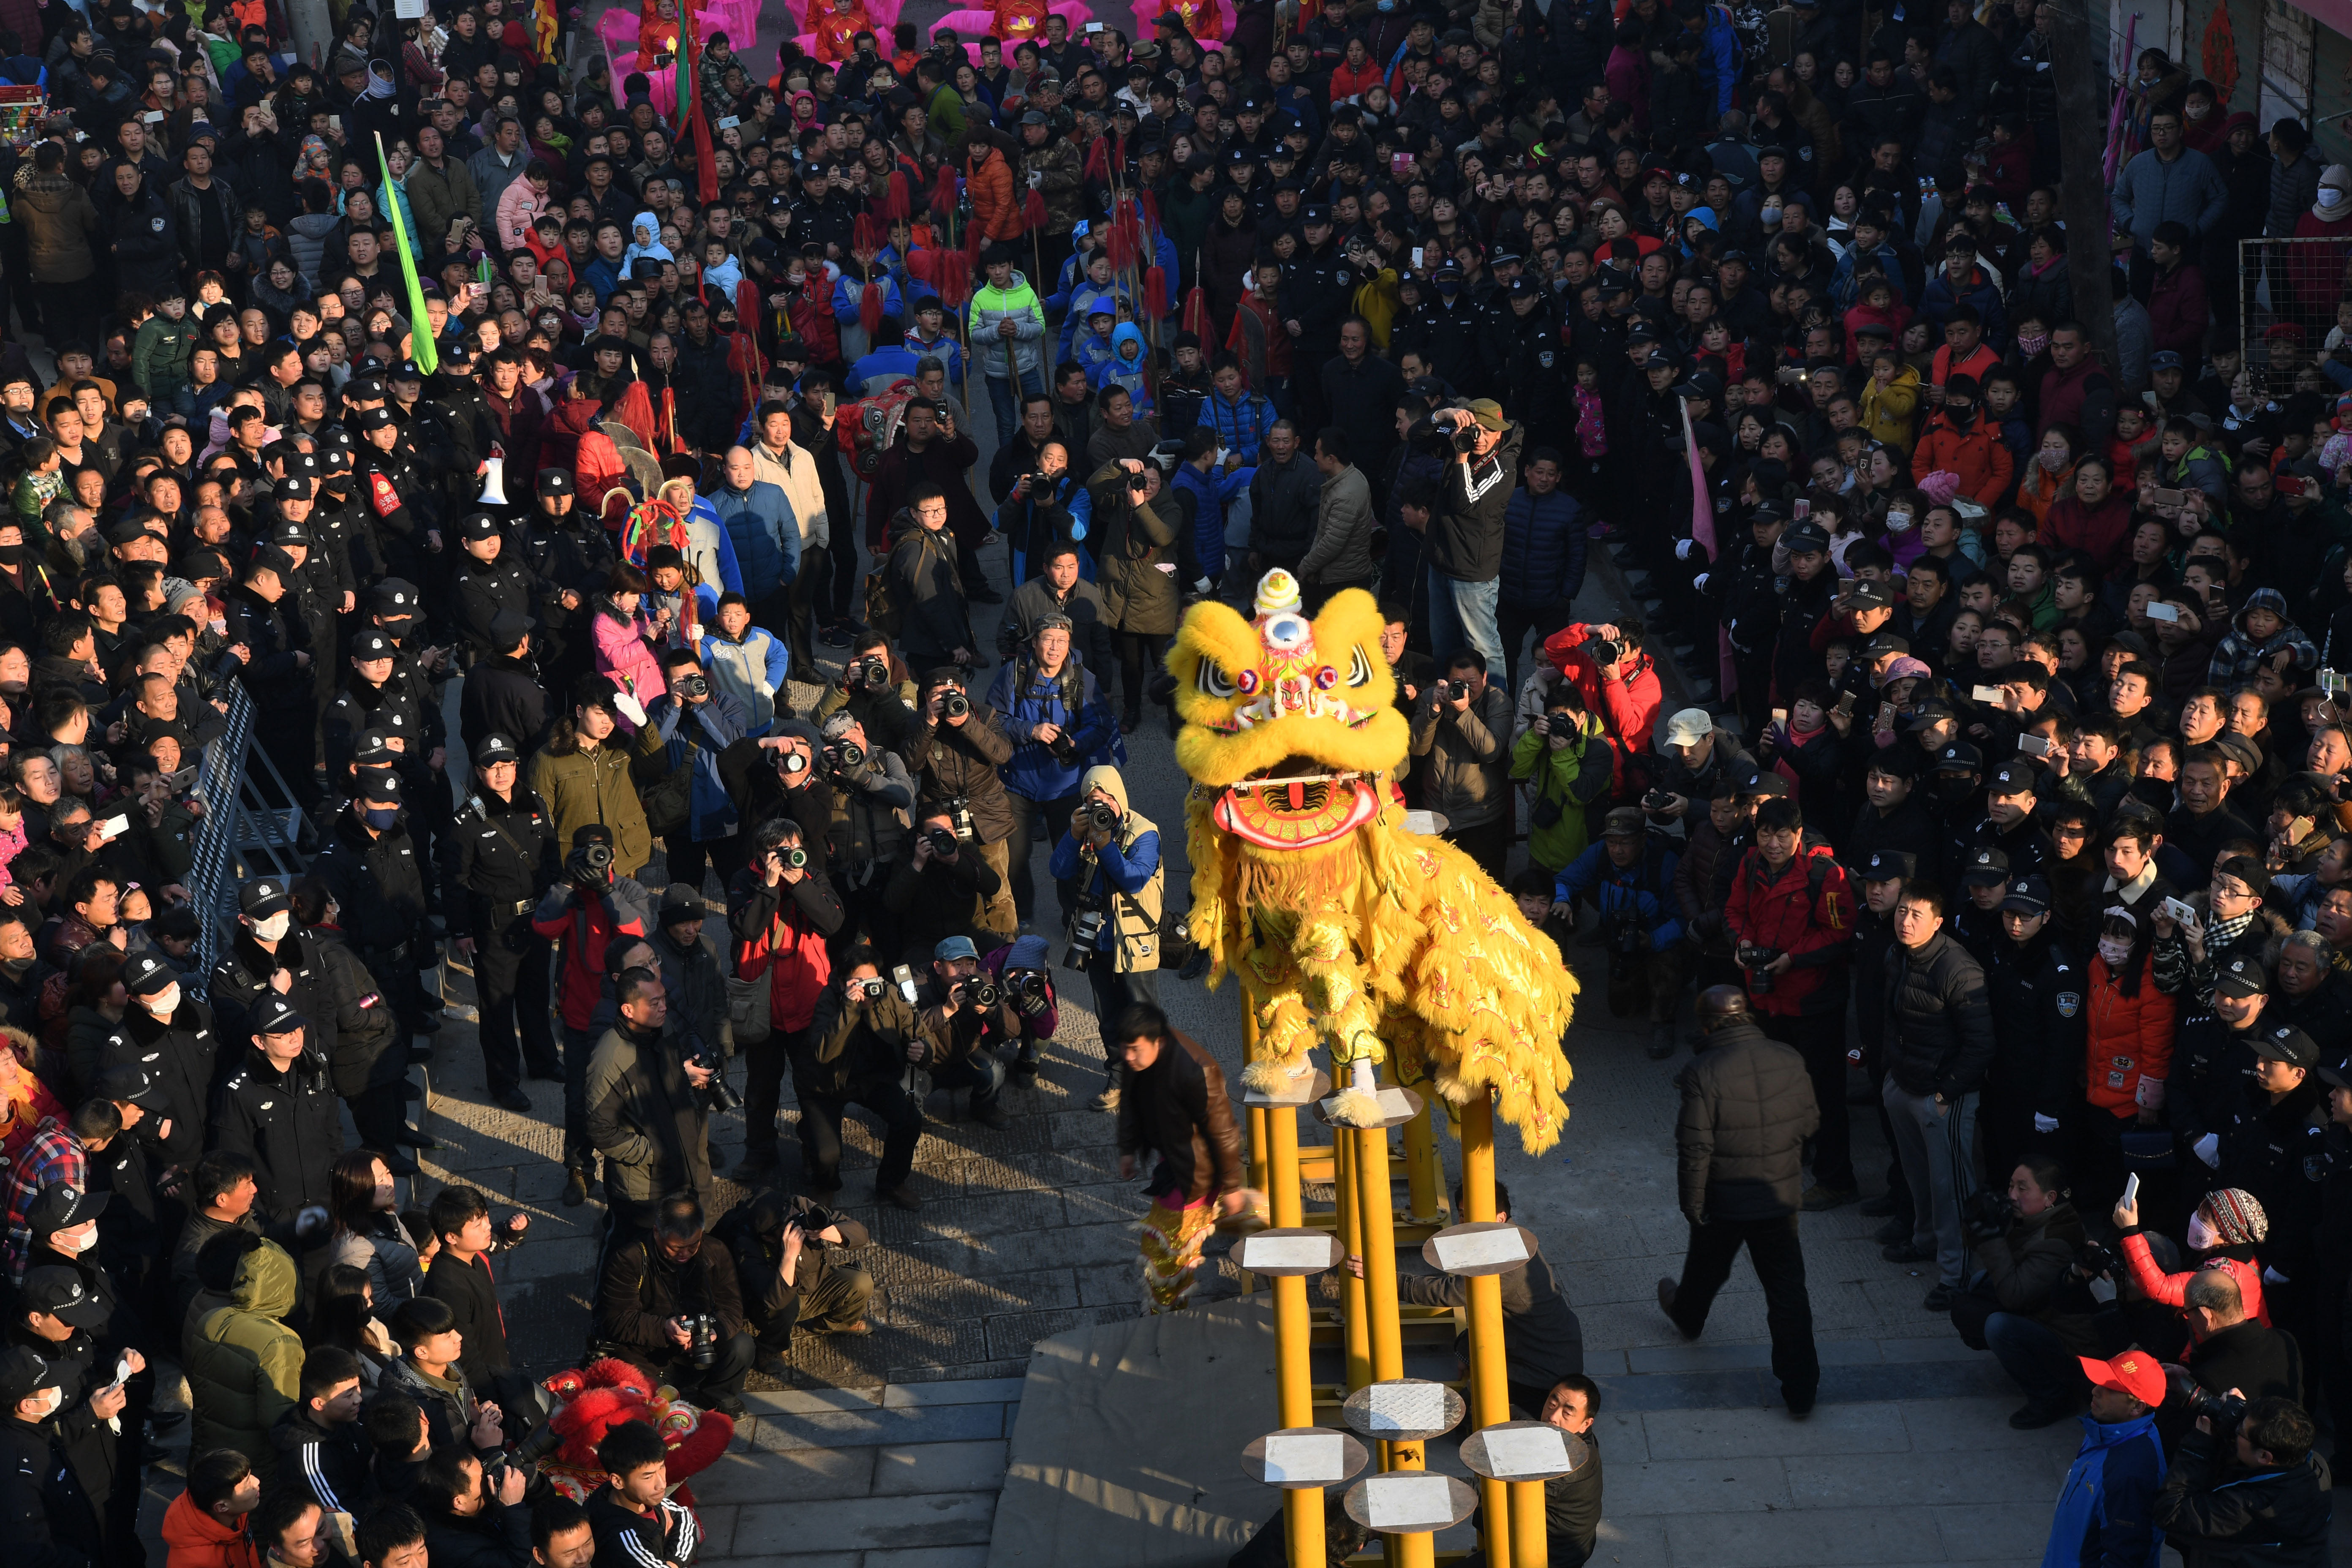 在河南省浚县举行的正月古庙会上,数十支由当地群众组成的社火表演